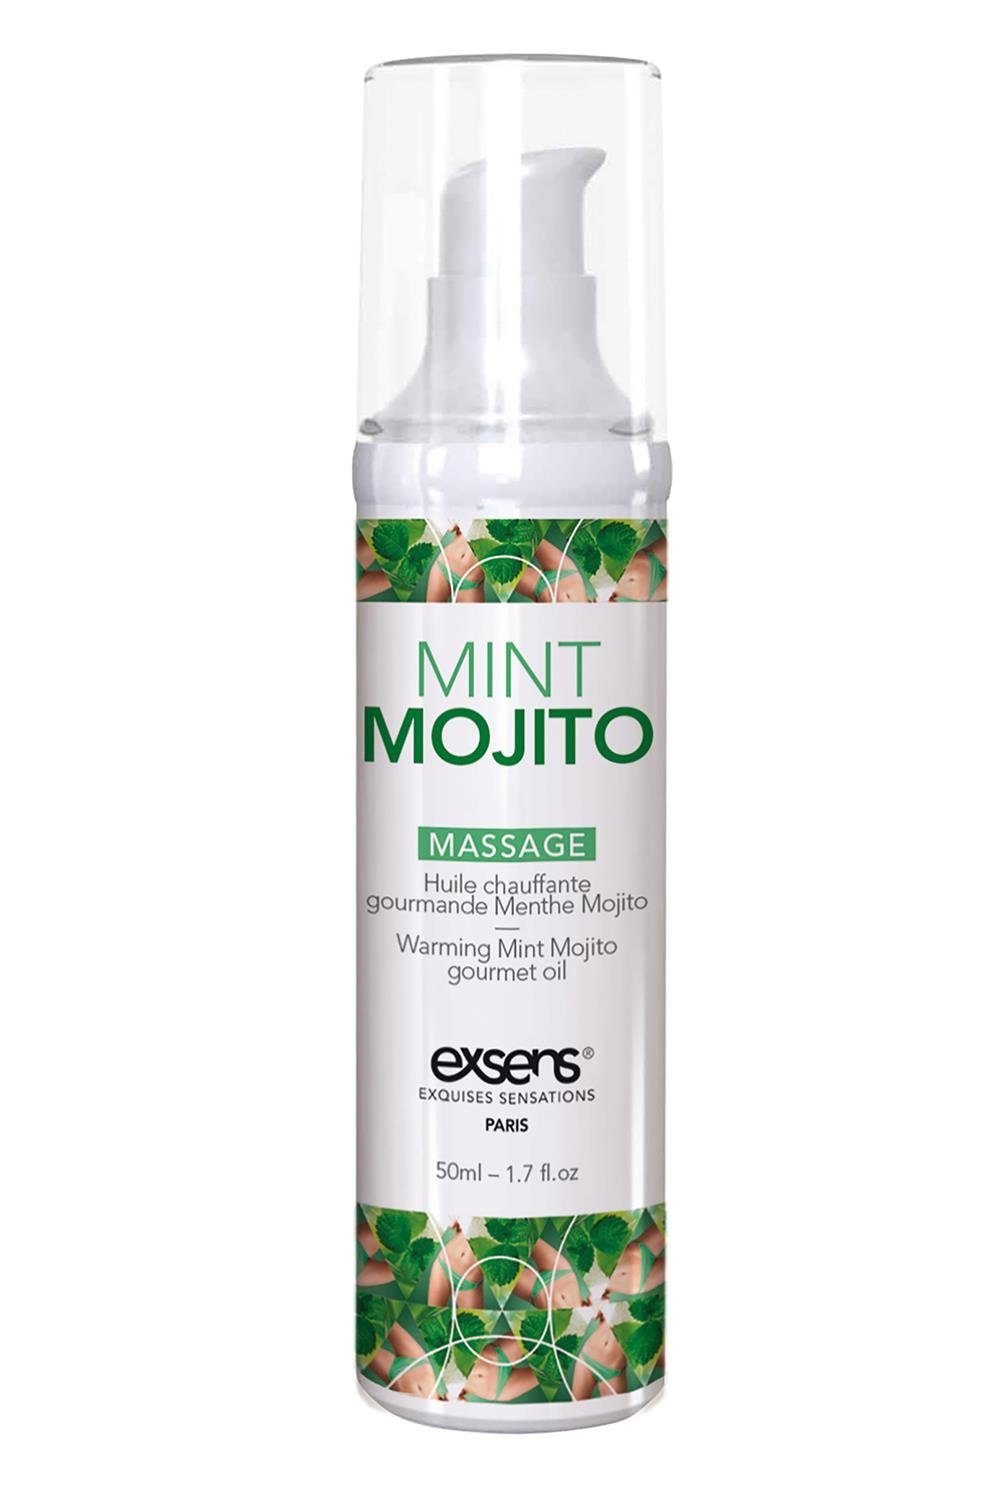 Exsens Gleit- & Massageöl Exens Mojito 50ml Warming Oil Massage Mint